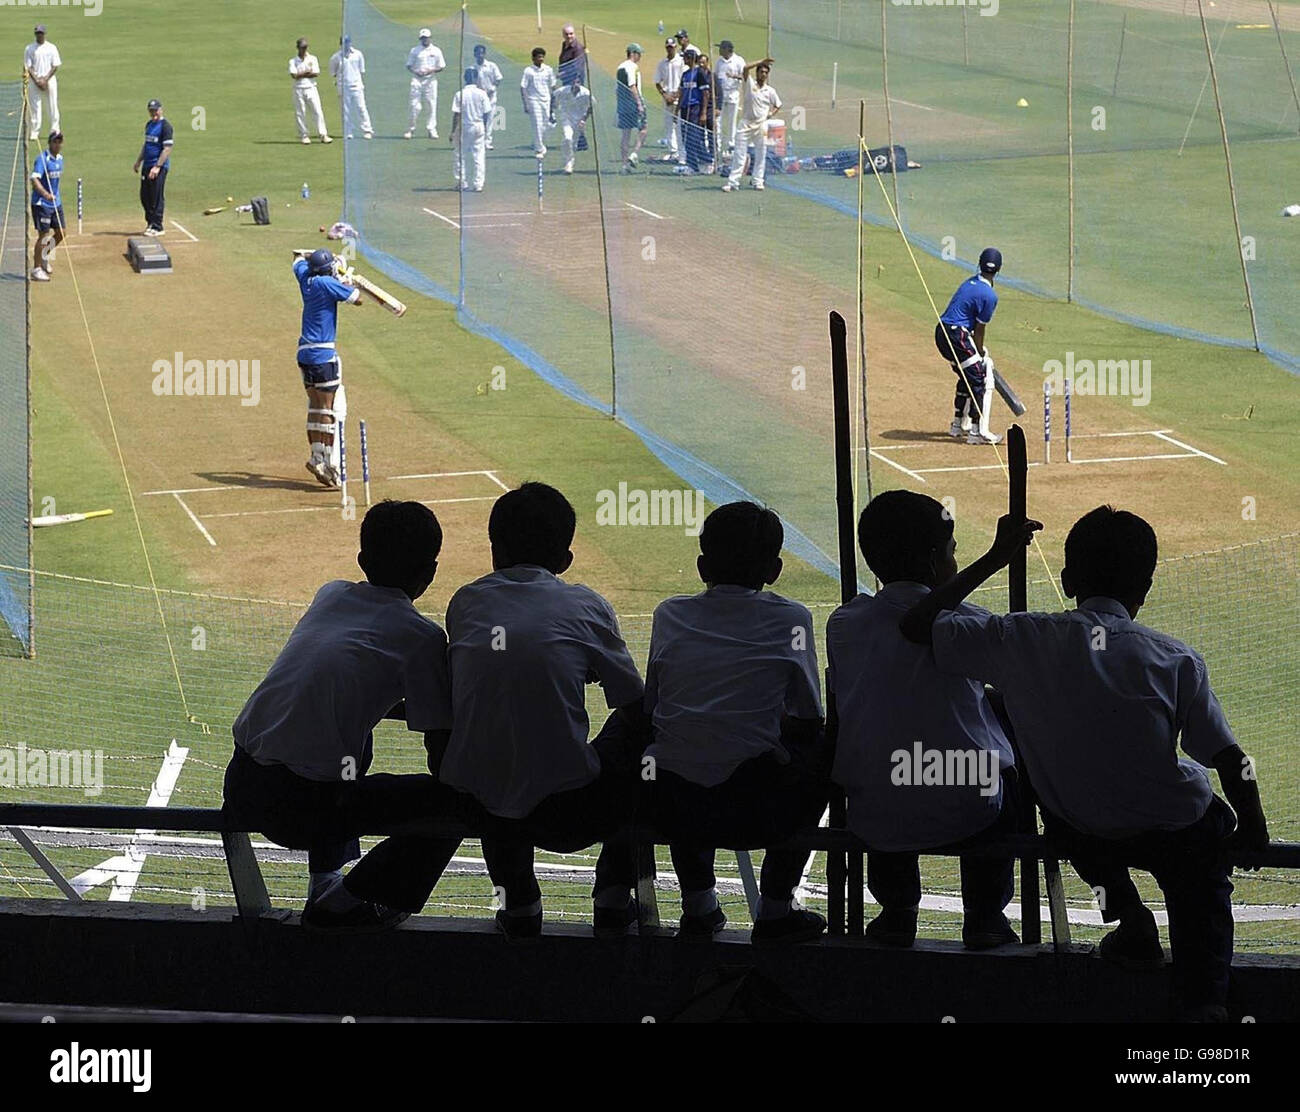 Cricket - sessione pratica India - Stadio Wankhede, Bombay. I ragazzi delle scuole guardano l'India in azione durante una sessione di pratica netta al Wankhede Stadium, Bombay, India. Foto Stock